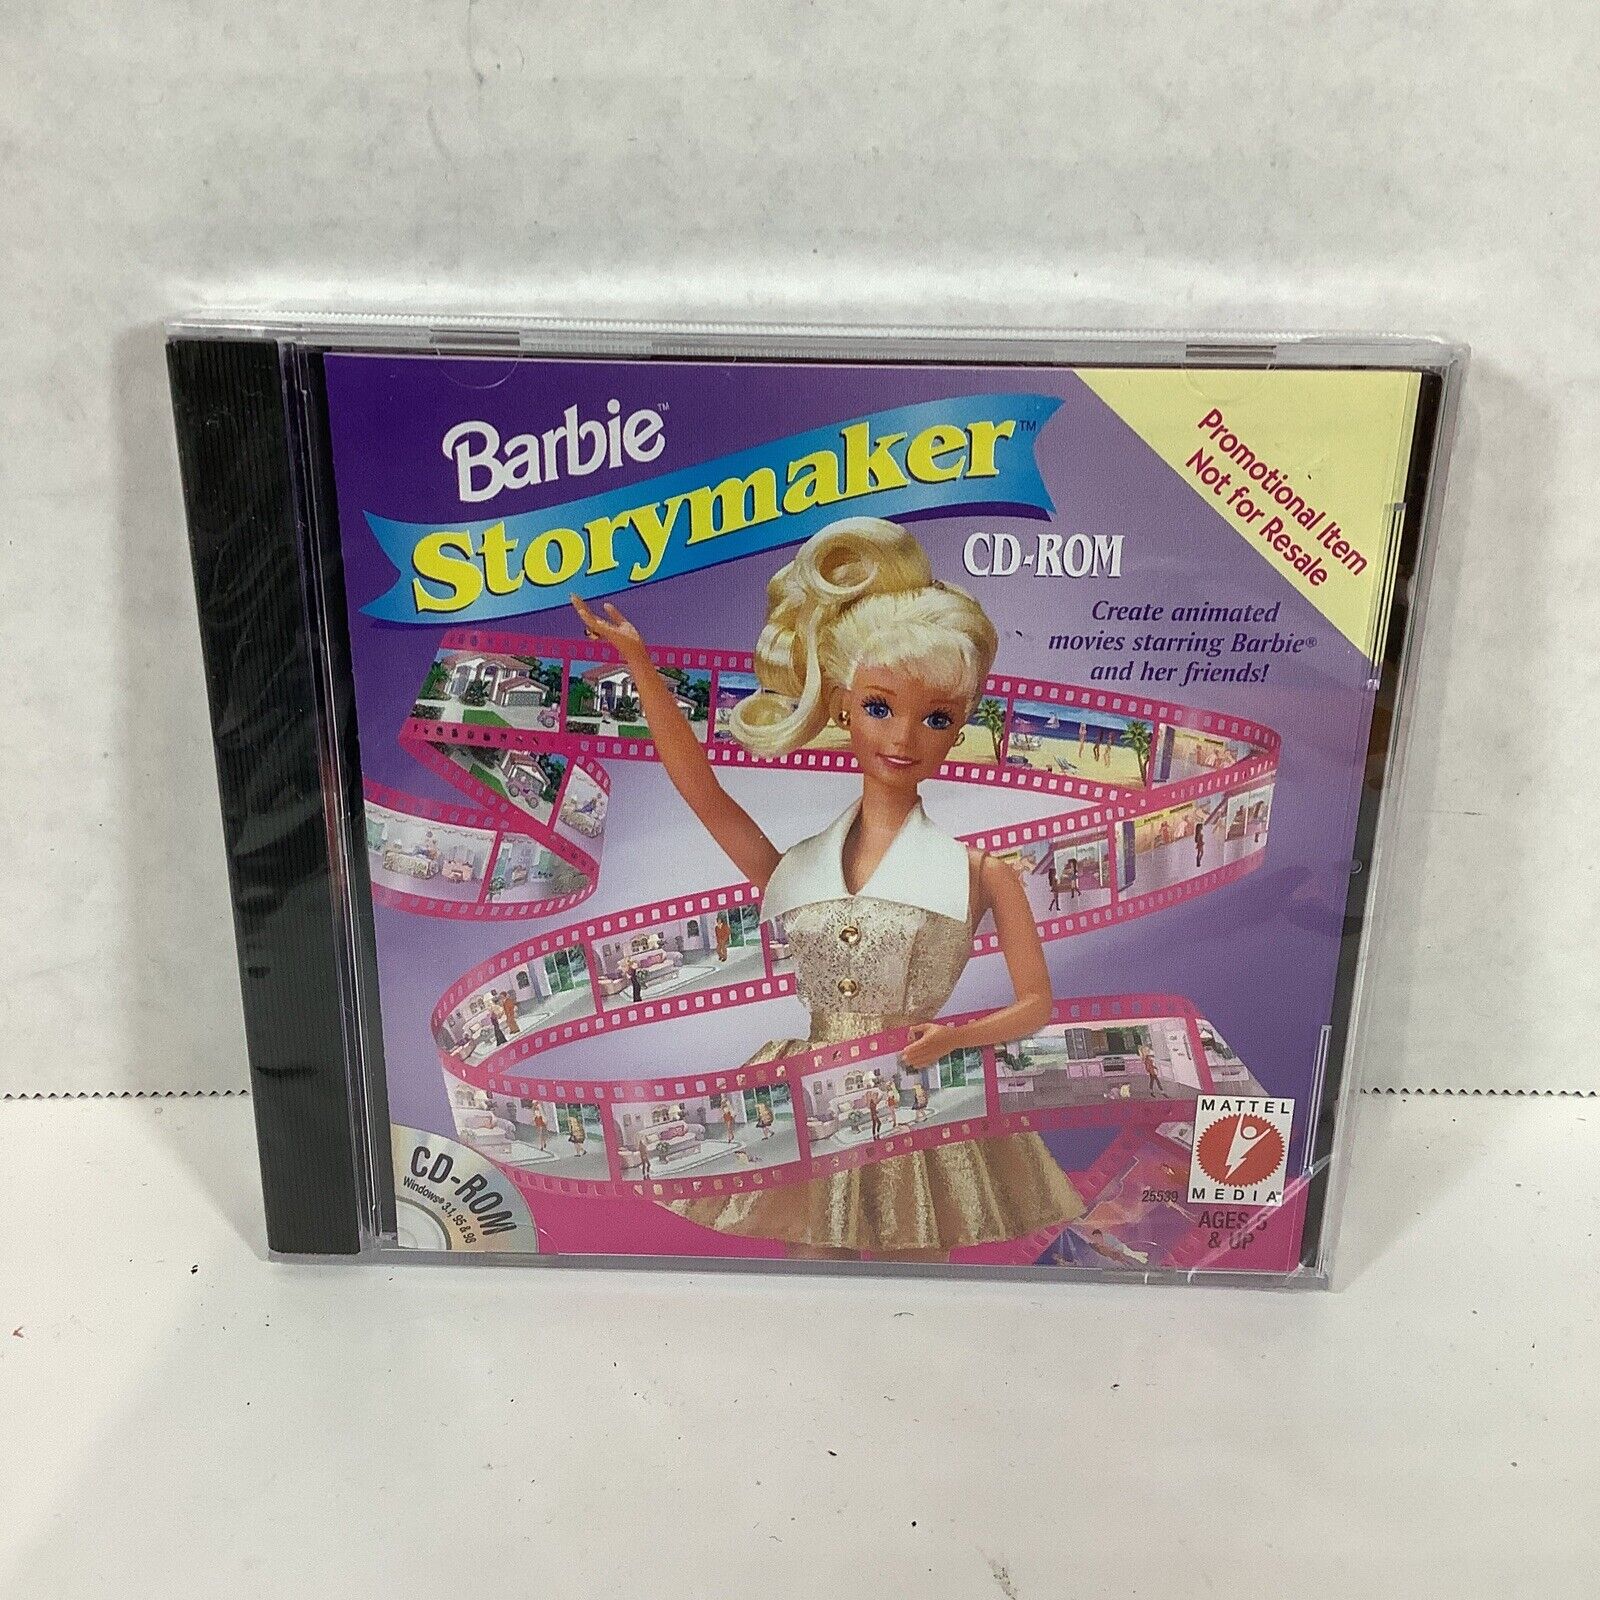 Barbie “Storymaker” CD-ROM for Windows Promo Item, 1999 Mattel Media #25539